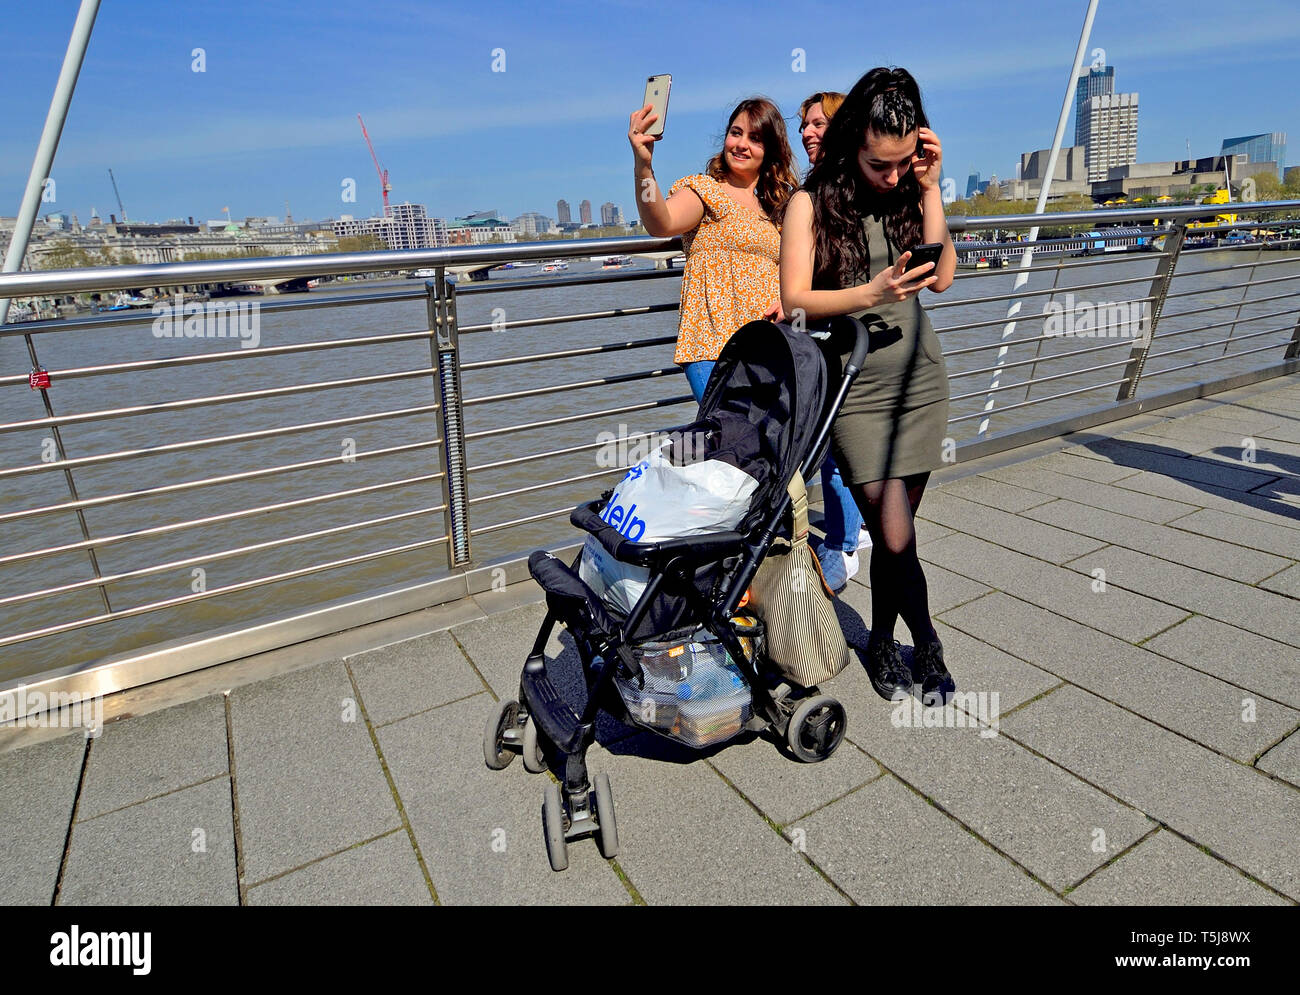 Londra, Inghilterra, Regno Unito. Giovani donne sul Millennium Bridge con i loro telefoni cellulari, prendendo un selfie Foto Stock